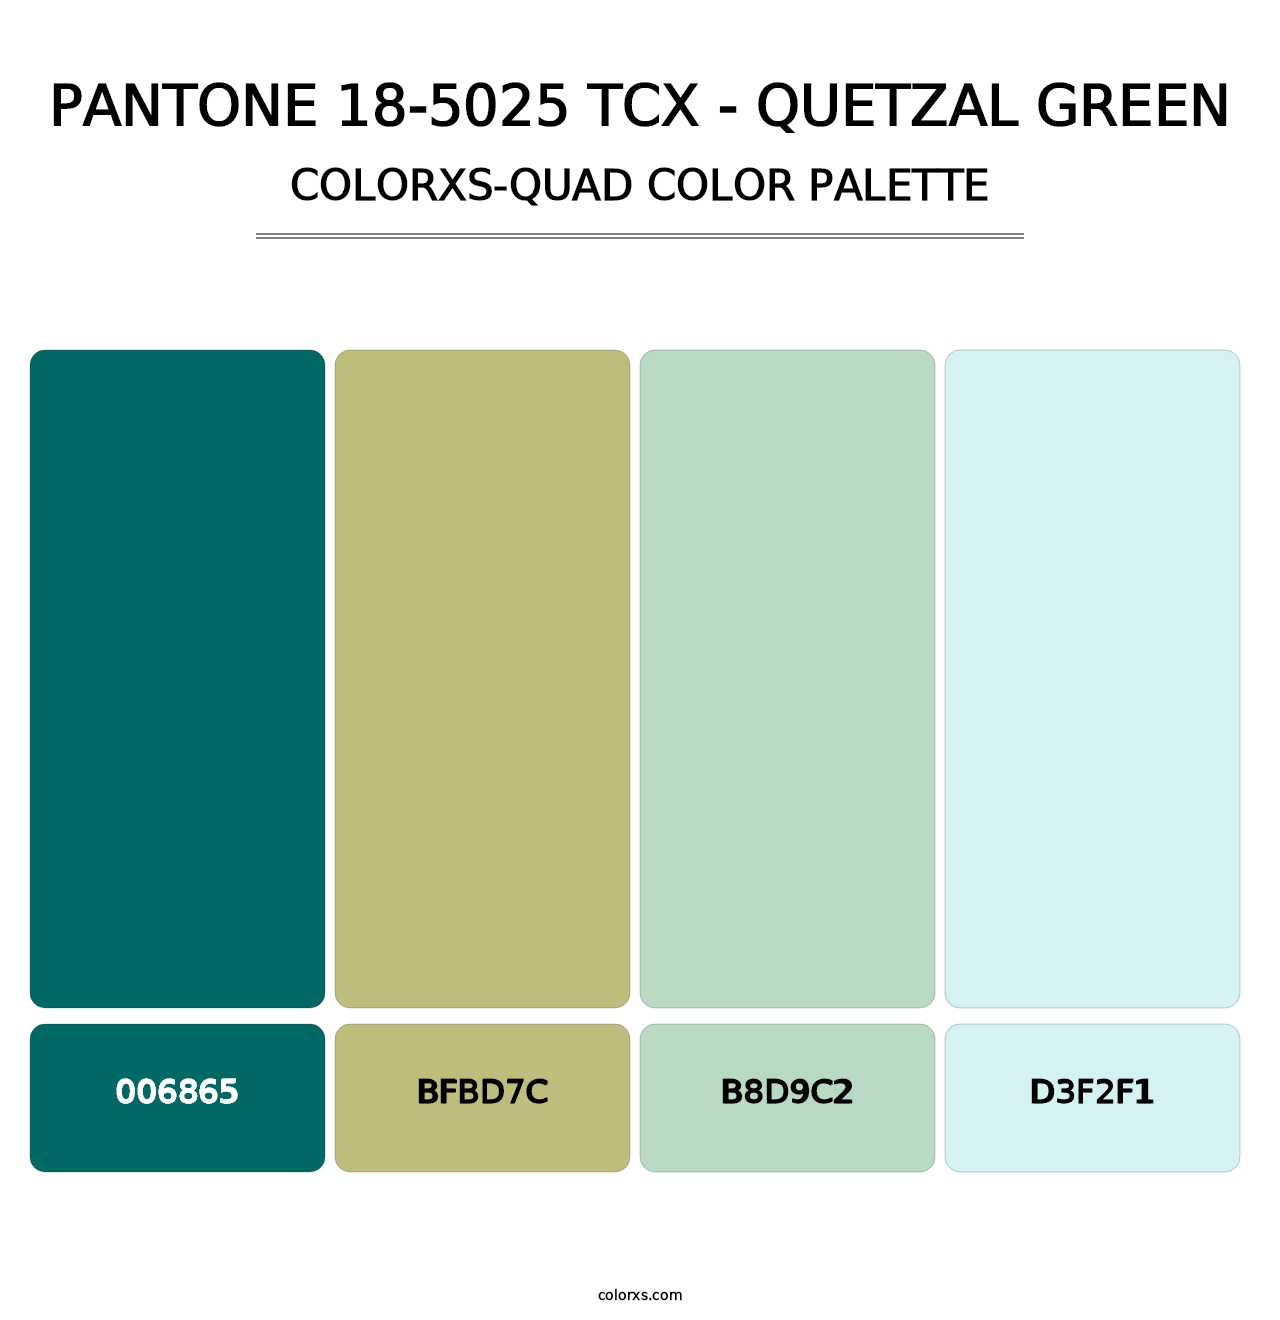 PANTONE 18-5025 TCX - Quetzal Green - Colorxs Quad Palette